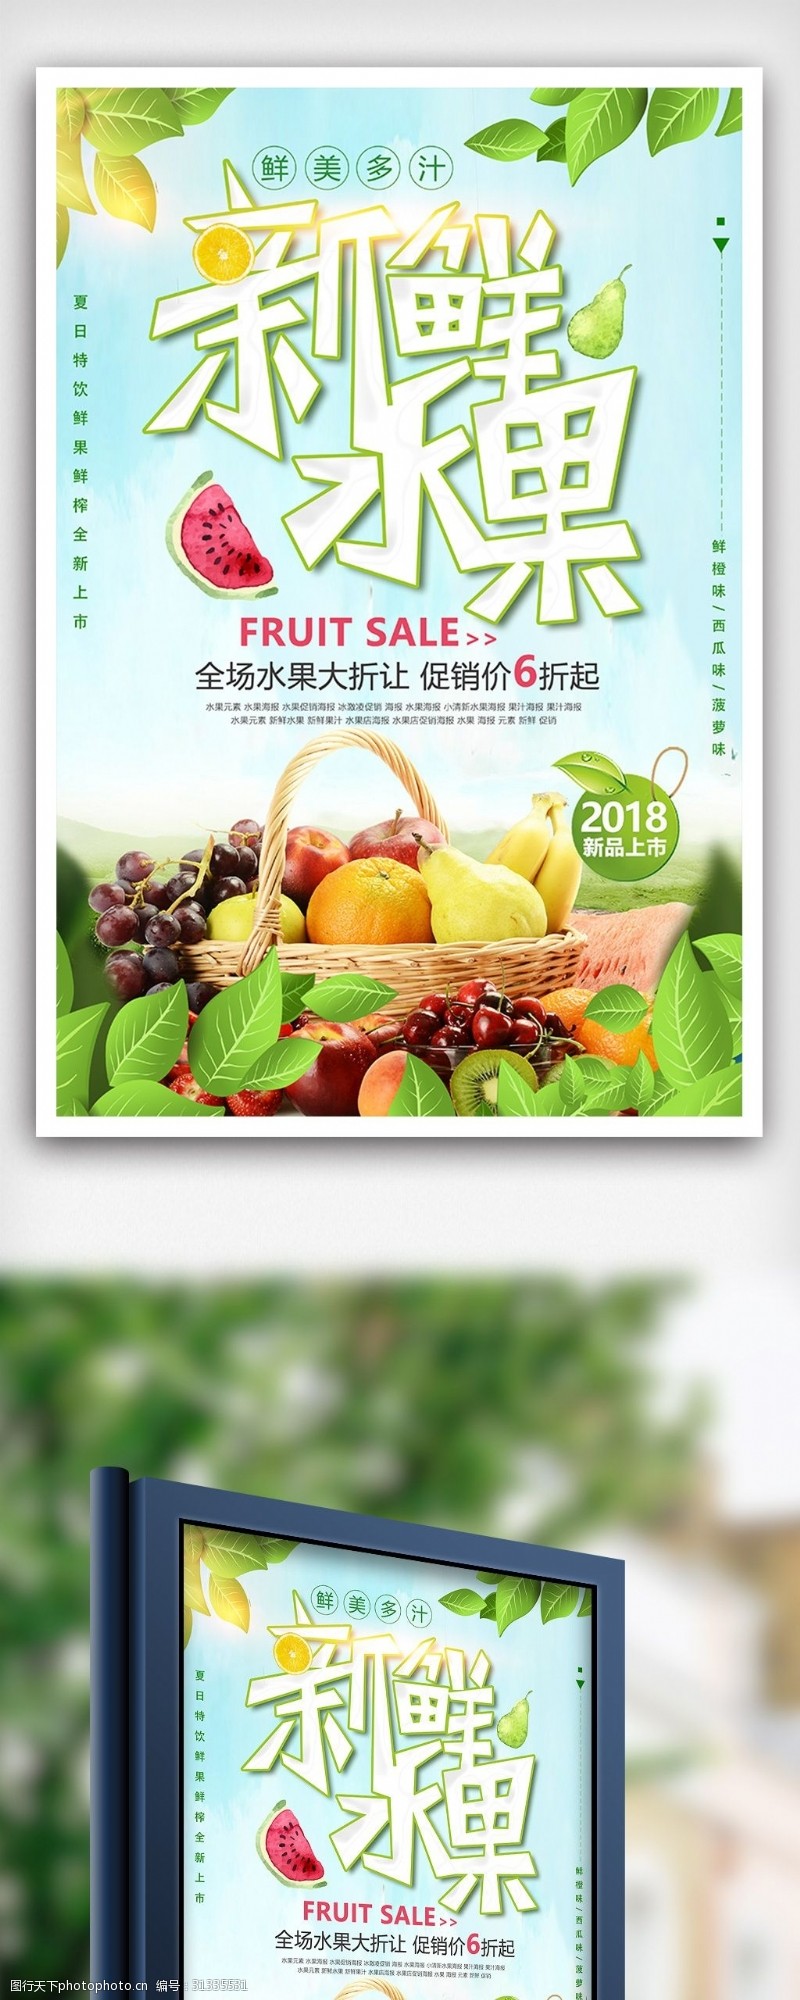 海鲜图片免费下载夏季新鲜水果超市大促海报设计